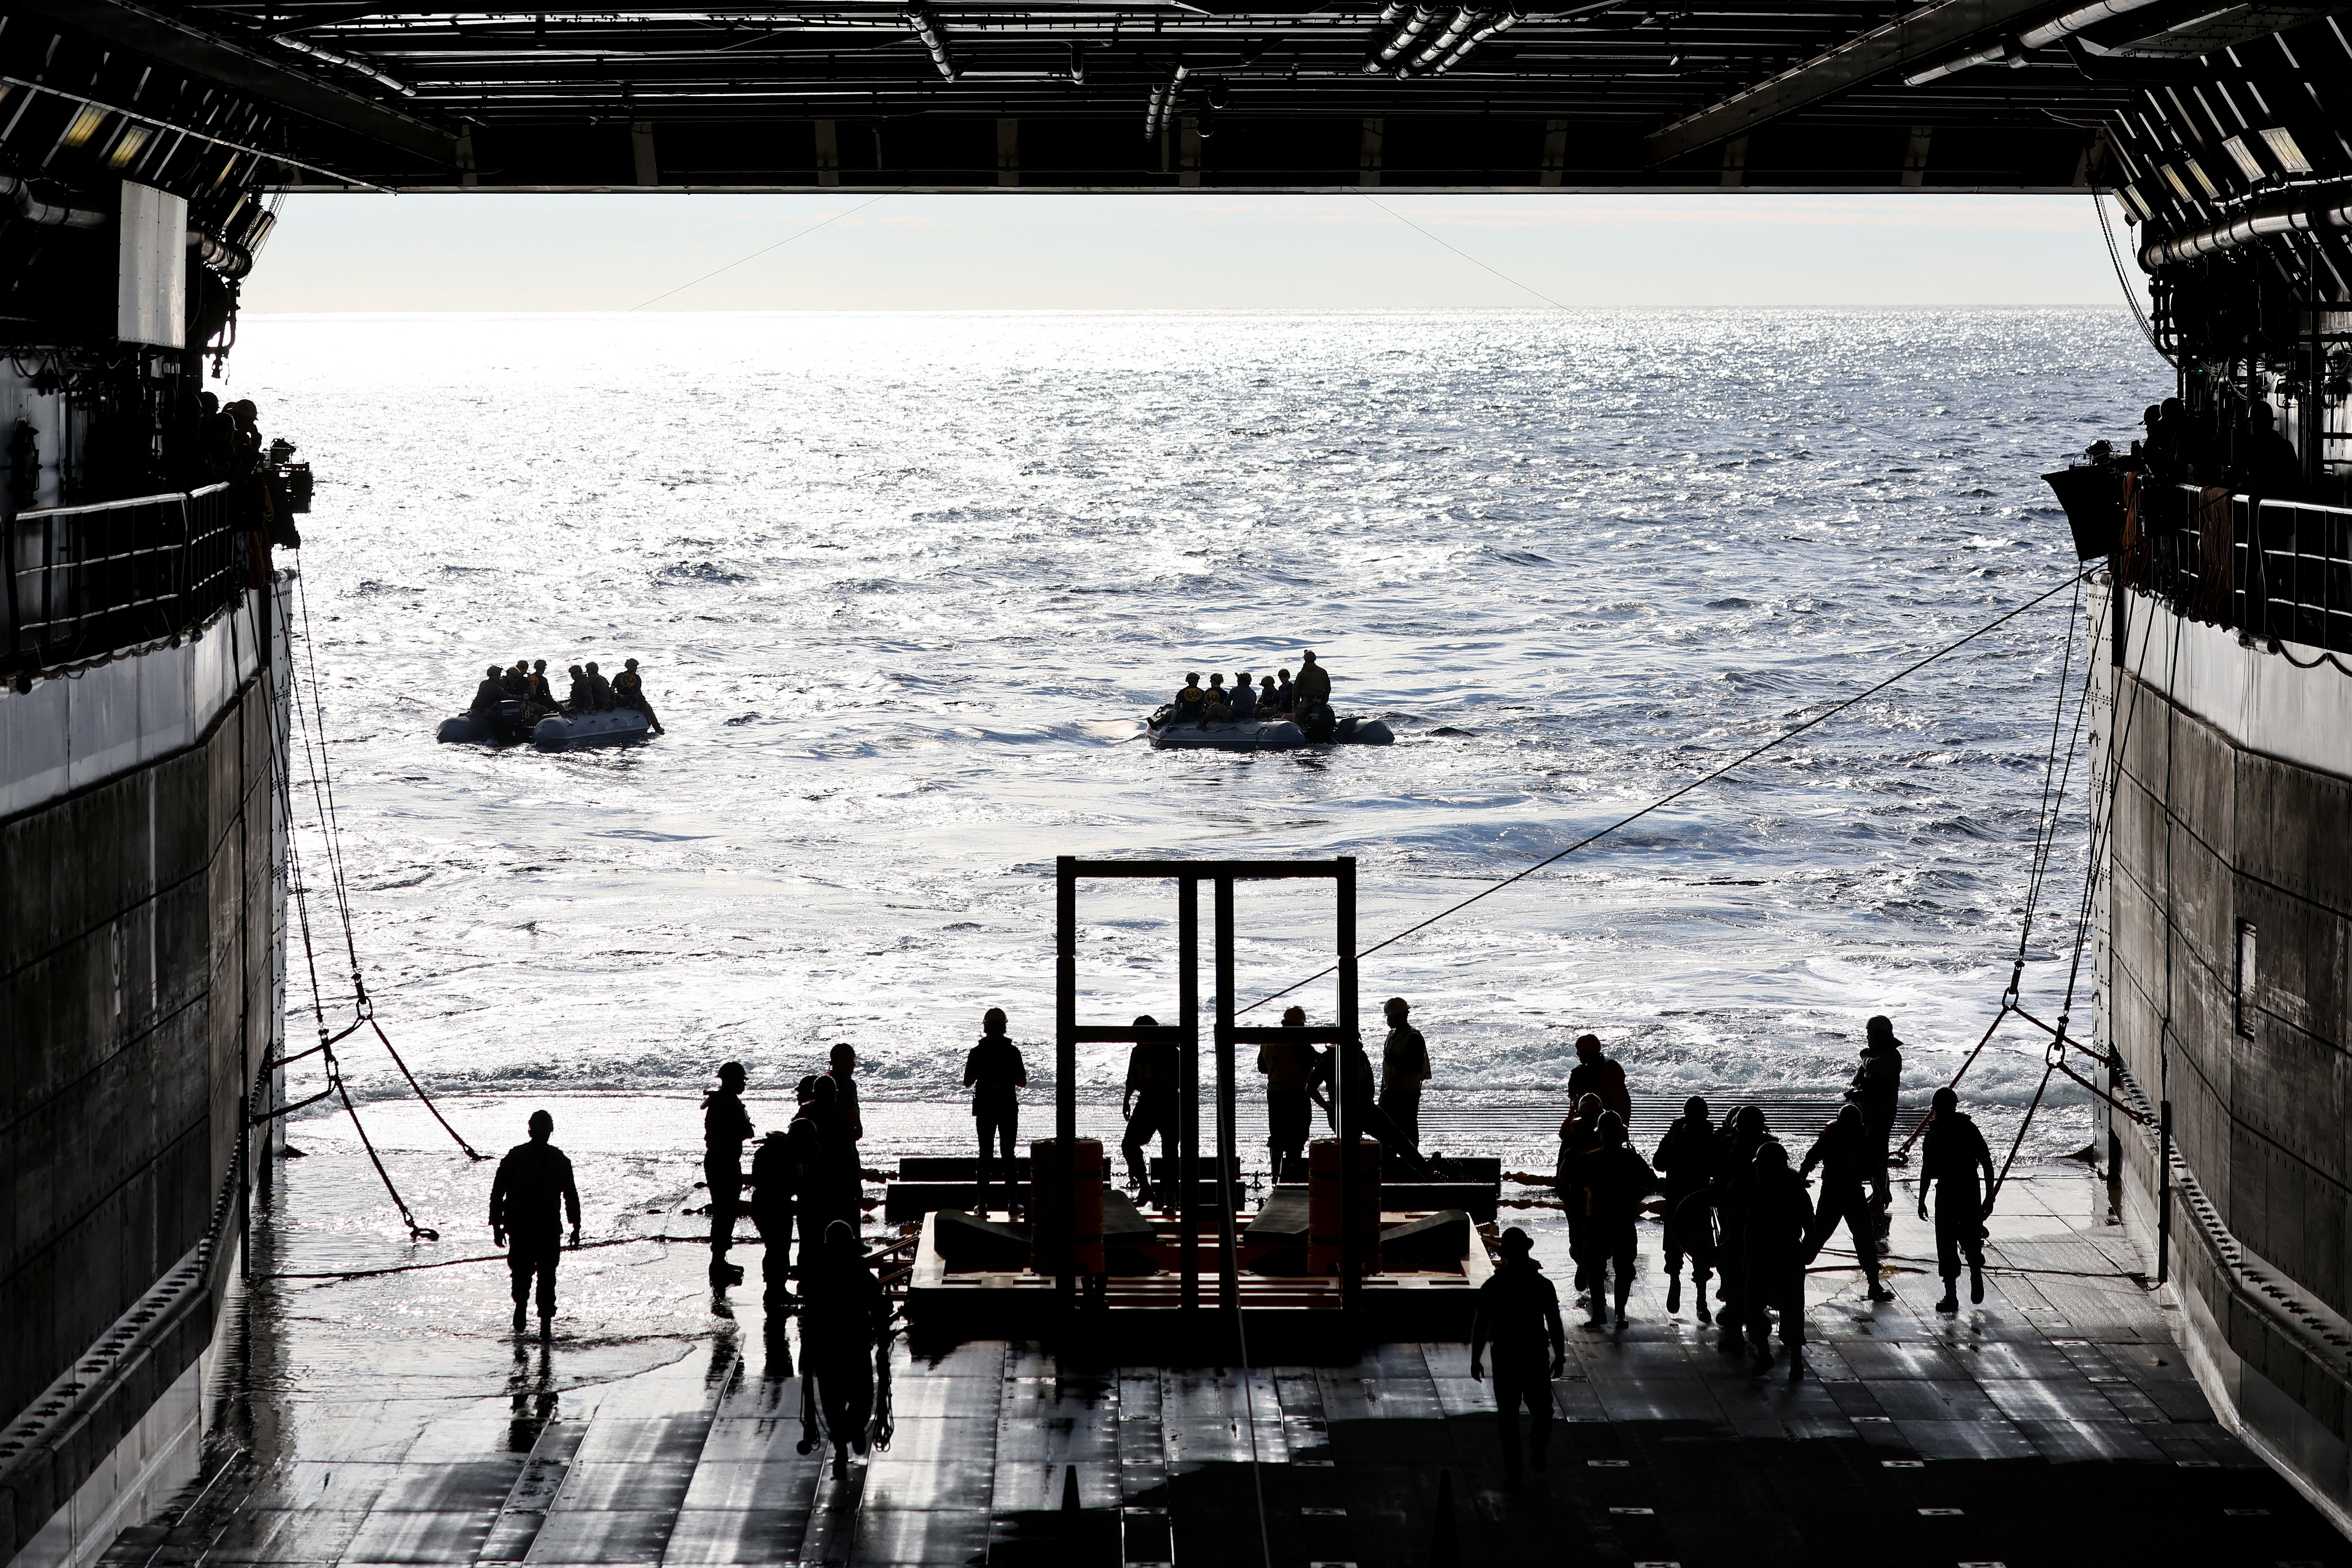 Buzos de la Marina parten para recuperar la cápsula  (Mario Tama/Pool via REUTERS)